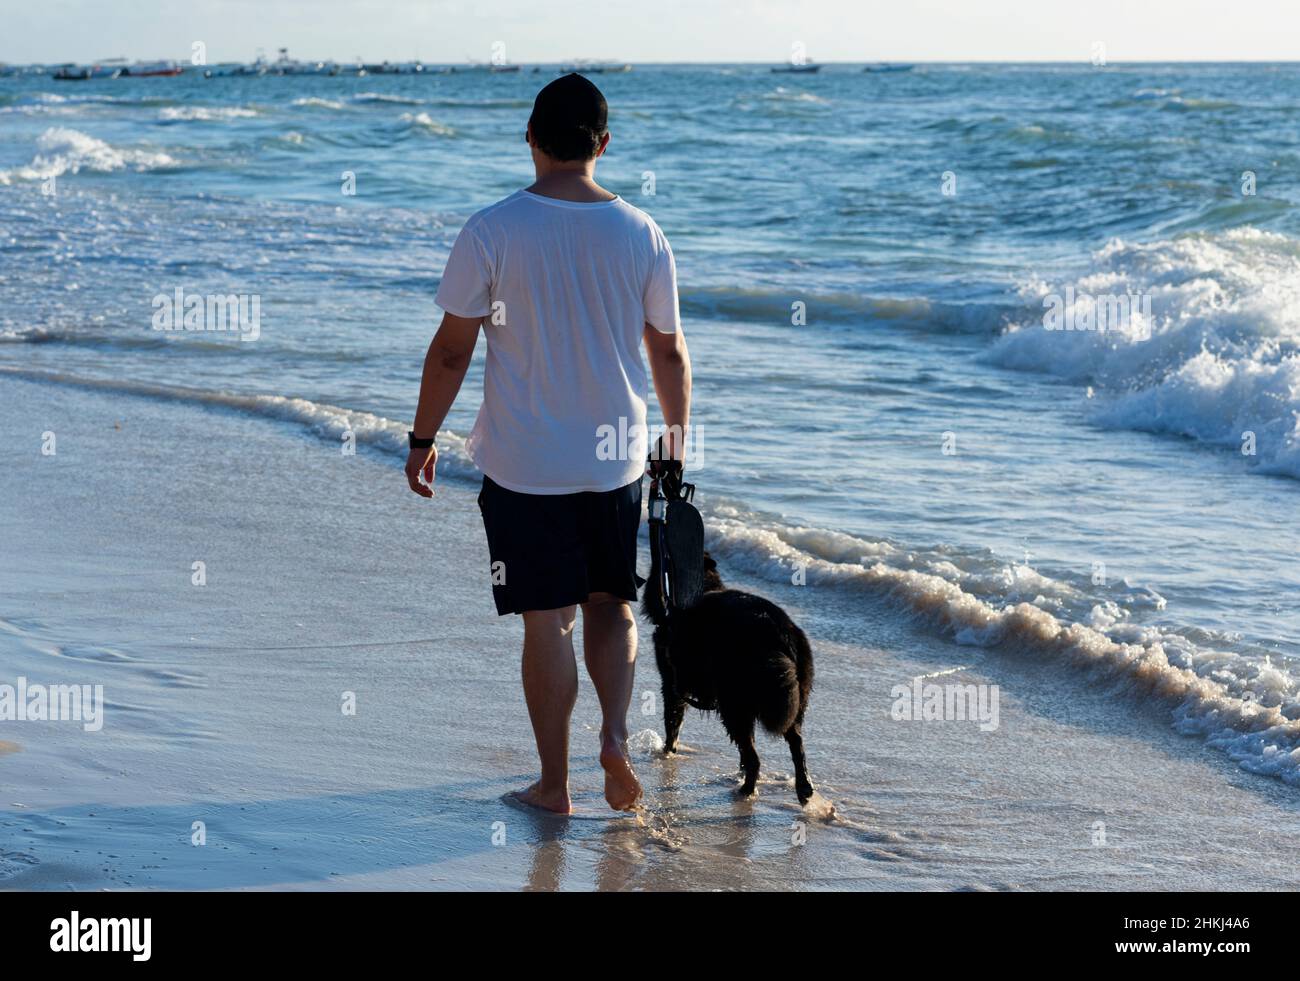 Un uomo messicano cammina con il suo cane sulla riva di una spiaggia della Riviera Maya in Messico. Immagine vista posteriore. Sullo sfondo il Mar dei Caraibi e le barche ormeggiate. Foto Stock